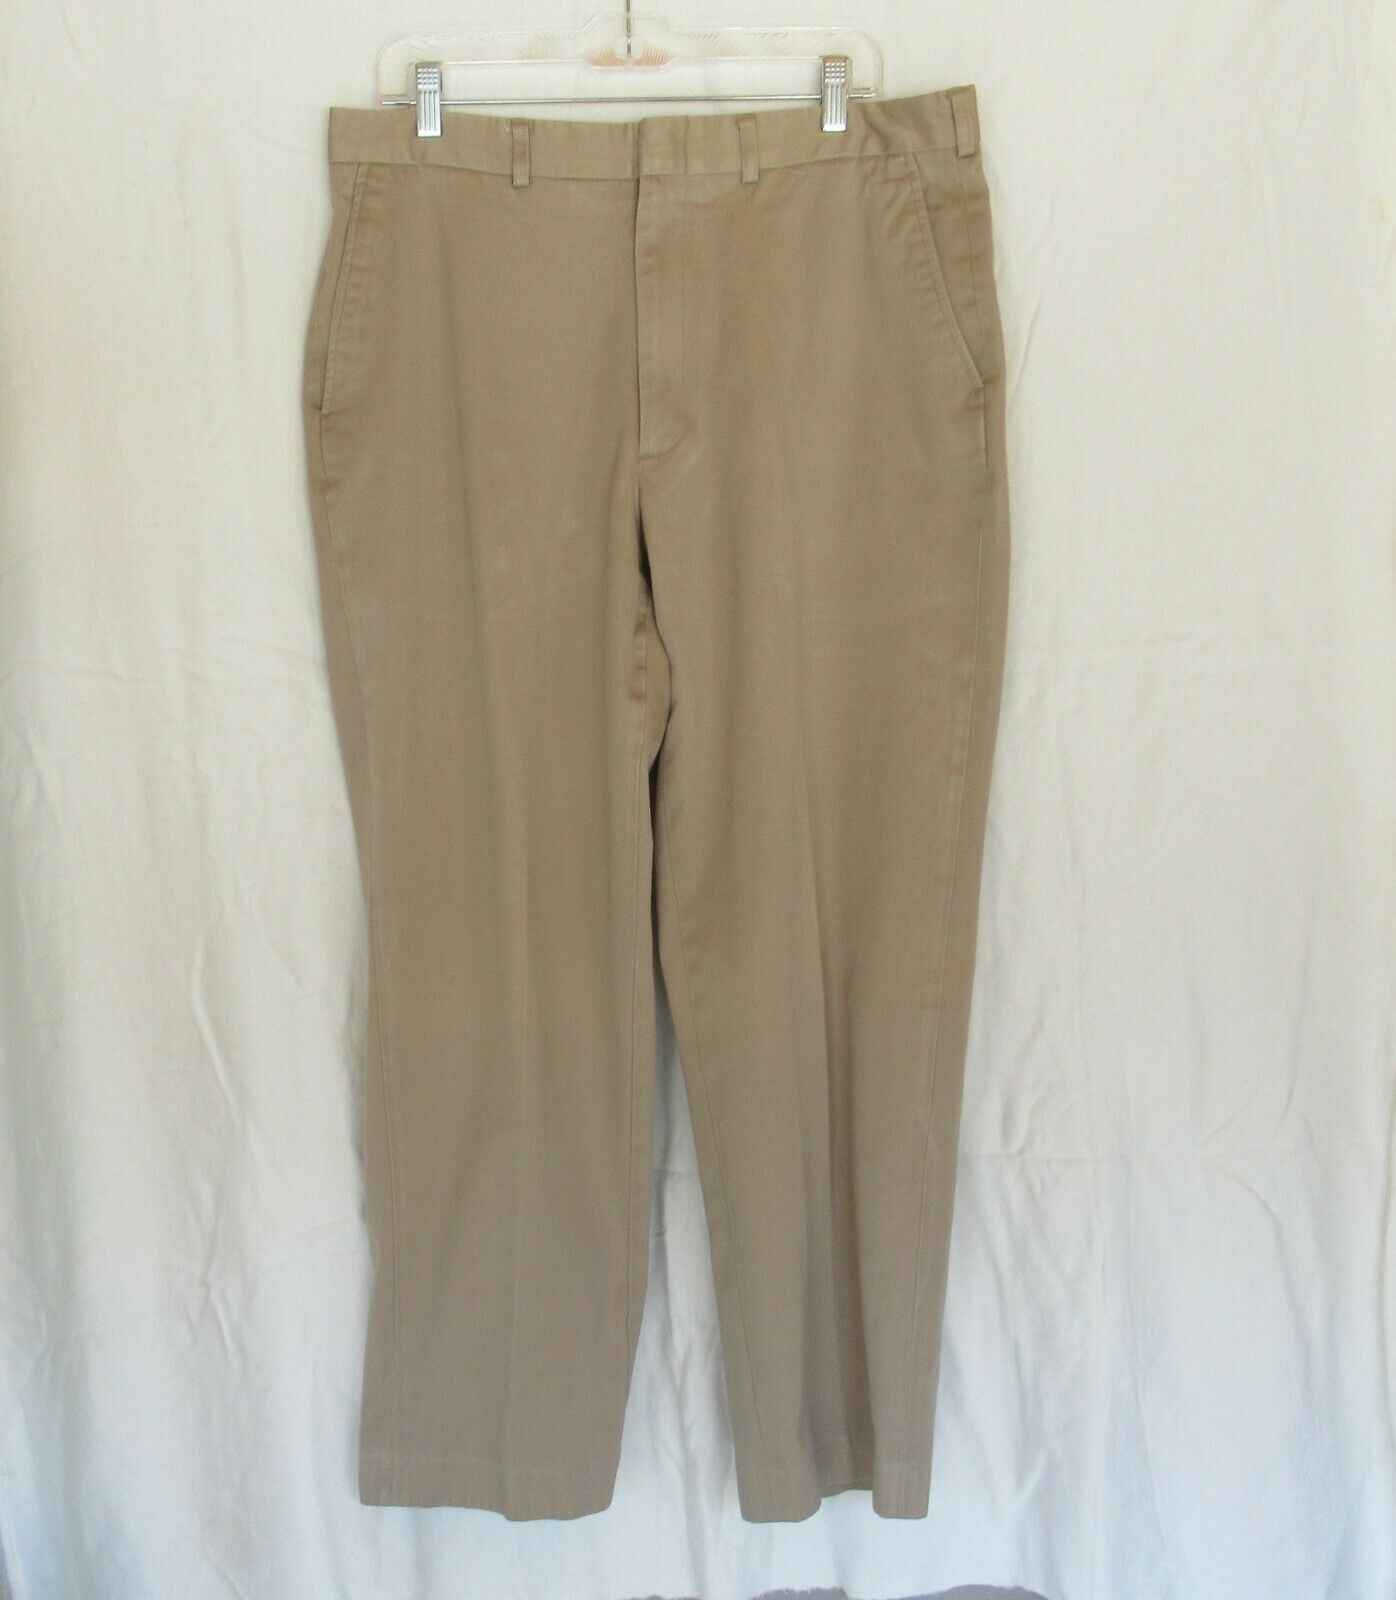 Lands' End men's pants 36x28-1/2 beige khaki flat front straight leg ...